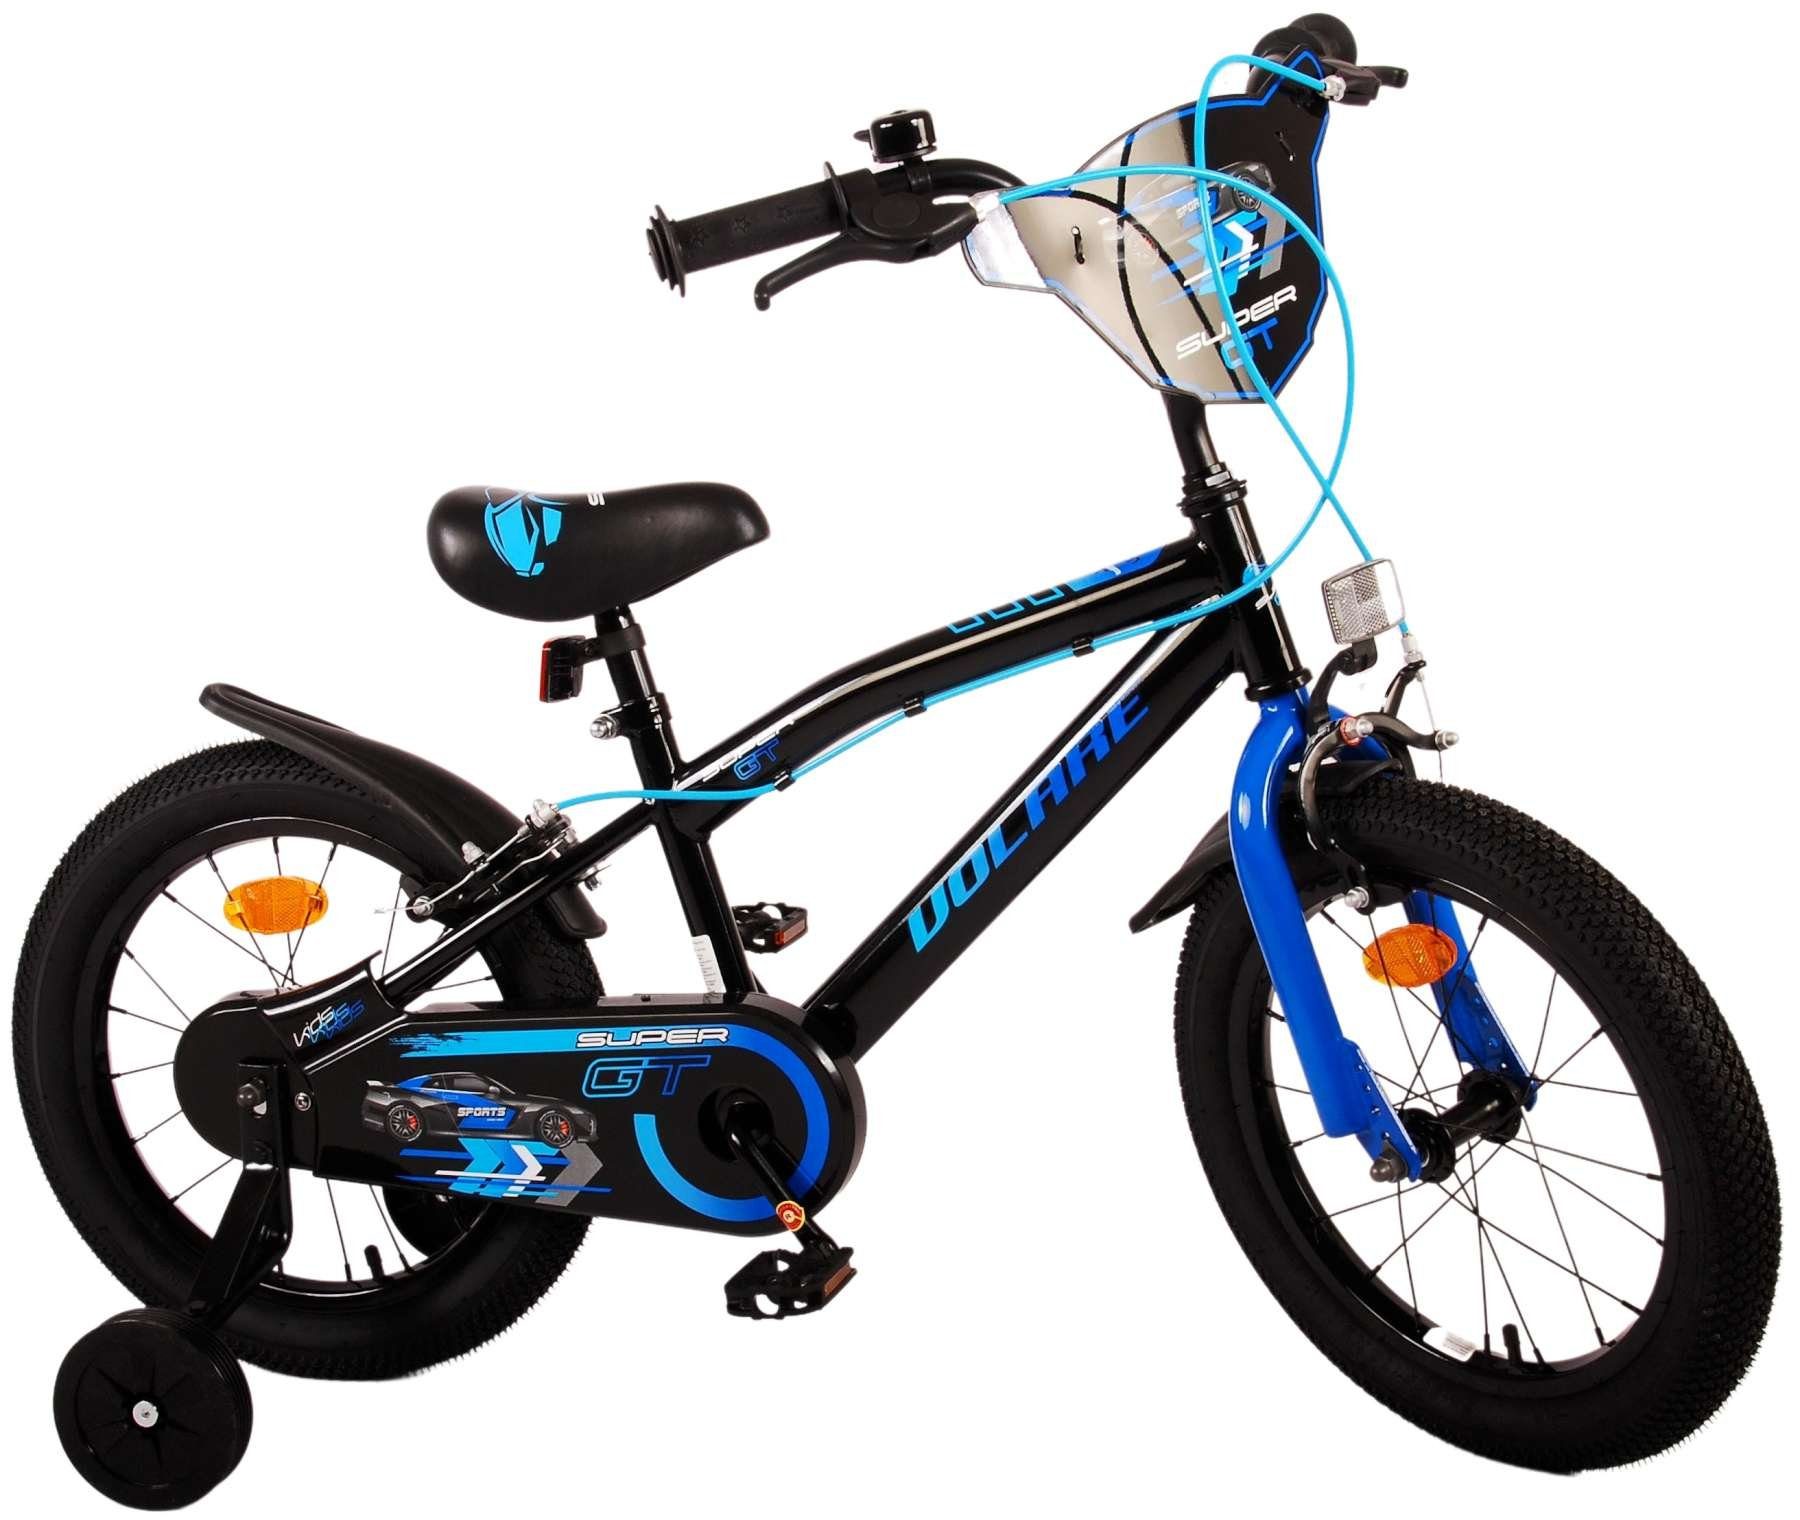 TPFSports Kinderfahrrad Volare Super GT 16 Zoll mit 2x Handbremse, 1 Gang, (Kinder Jugend Fahrrad - Jungsfahrrad - Rutschfeste Sicherheitsgriffe), Kinder Fahrrad 16 Zoll - Jugend Fahrrad - Blau